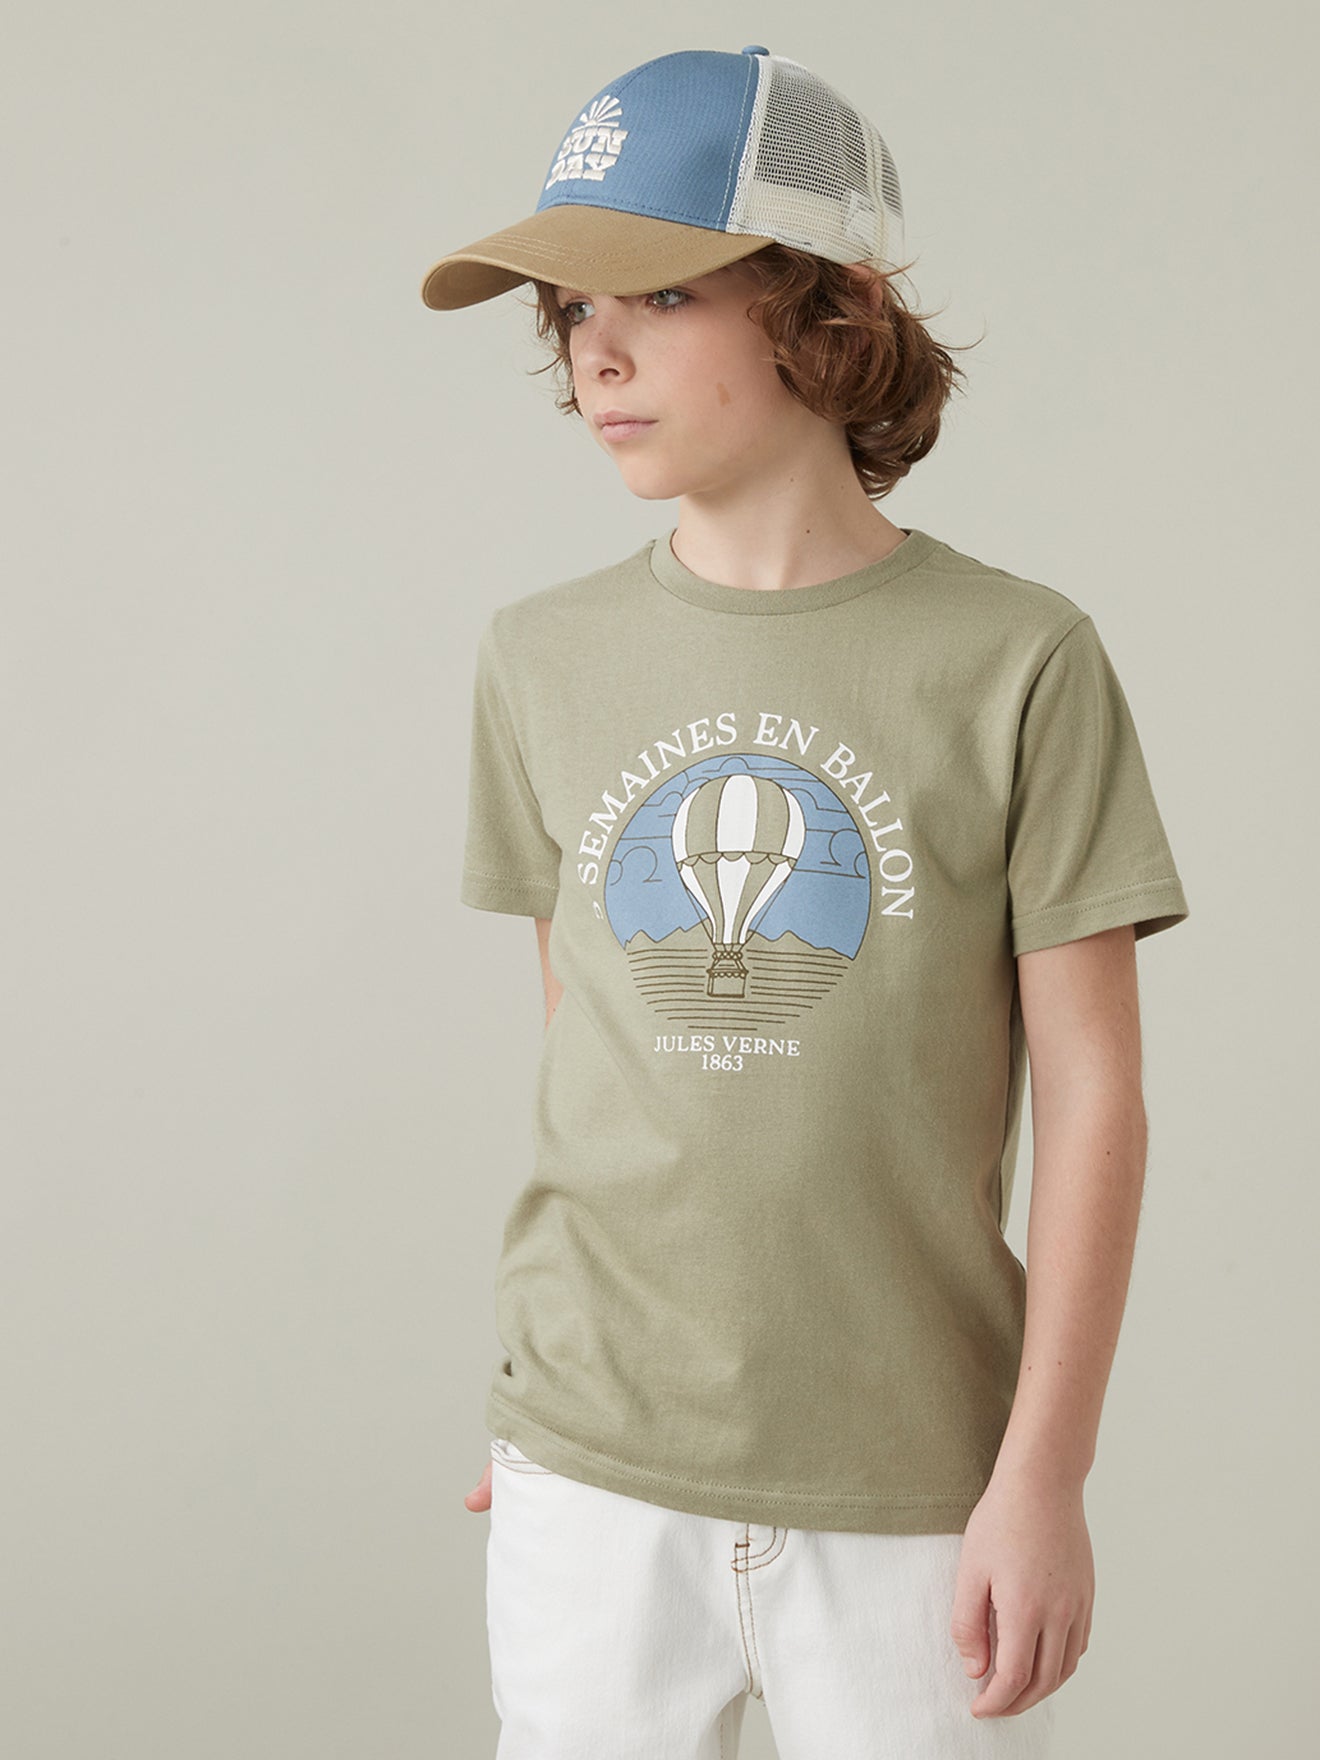 T-shirt Enfant Collection Jules Verne - Coton bio